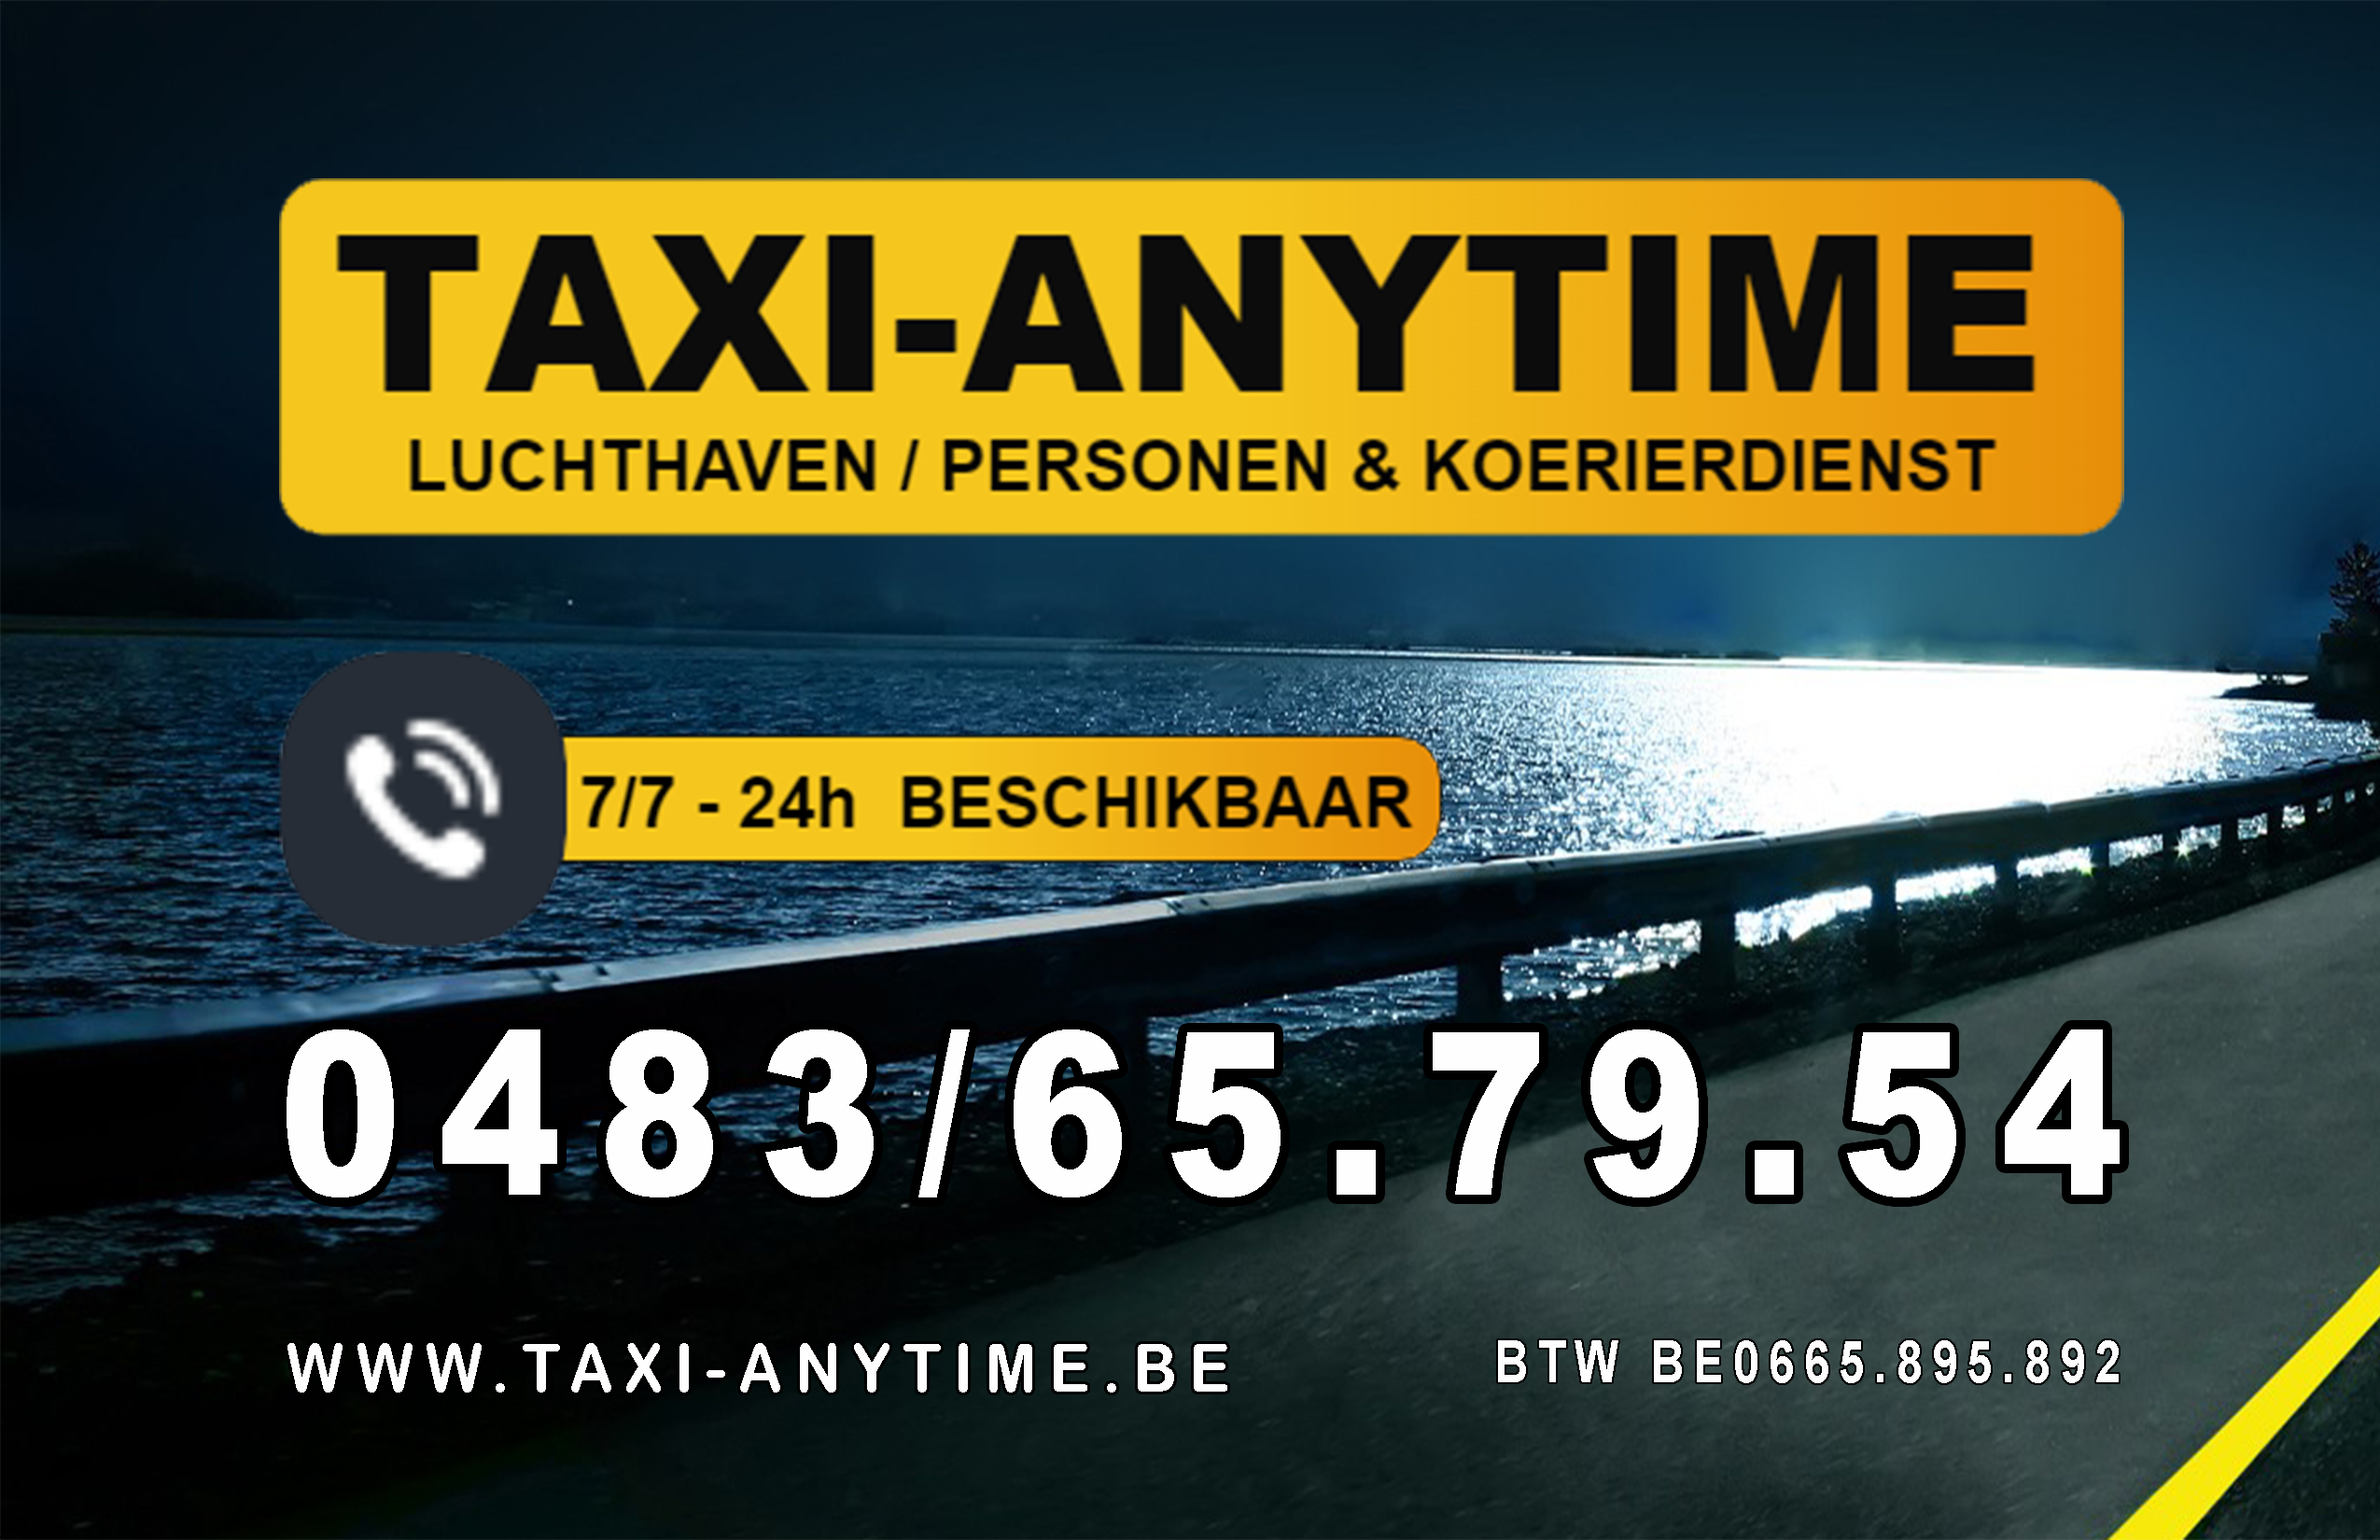 taxibedrijven met luchthavenvervoer Geel Taxi-anytime